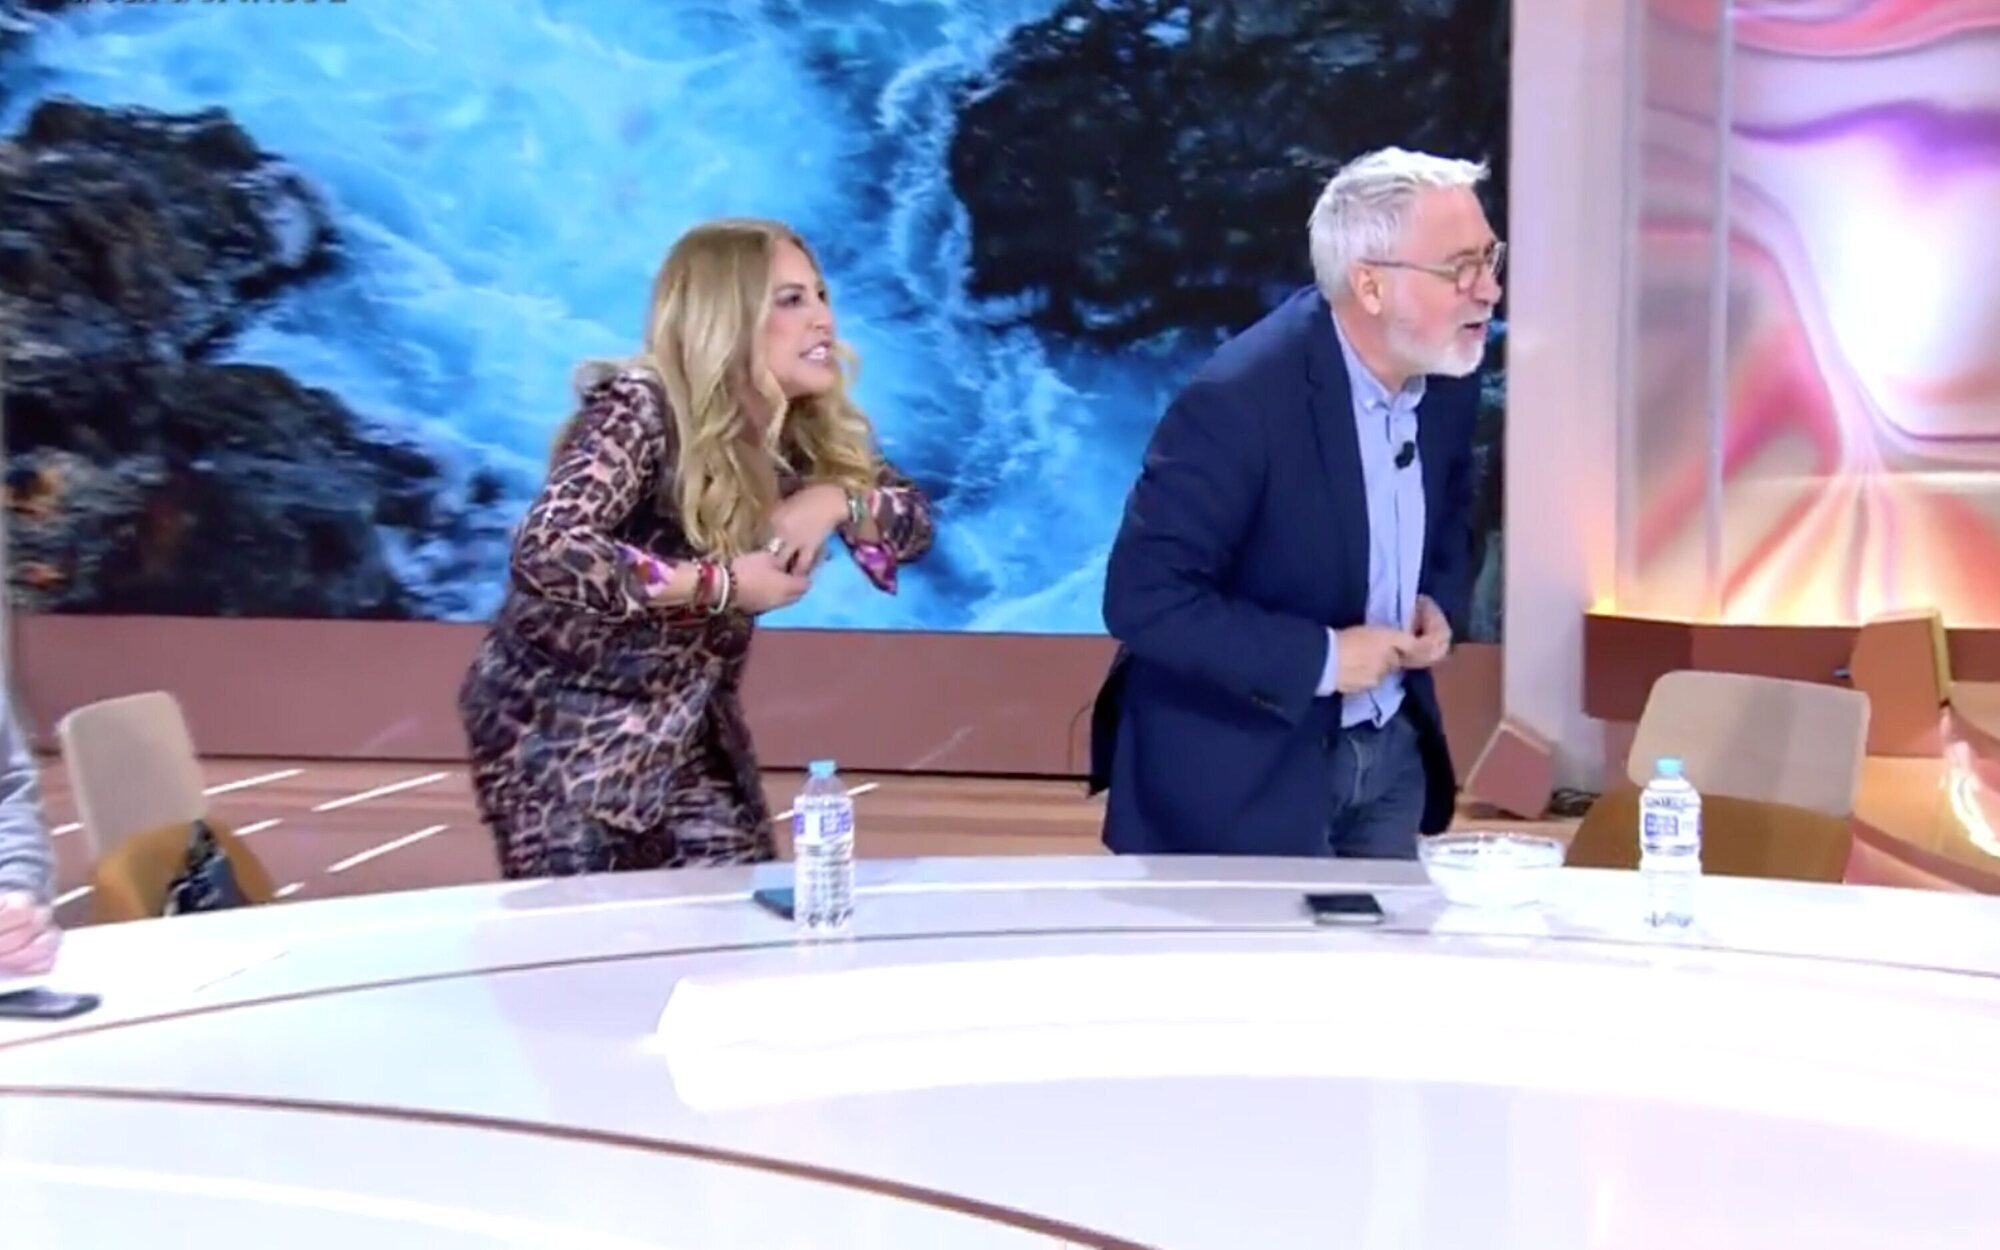 Cristina Tárrega se enfada con Xavier Sardà por tirarle hielo al escote en 'TardeAR': "¿Eres tonto?"